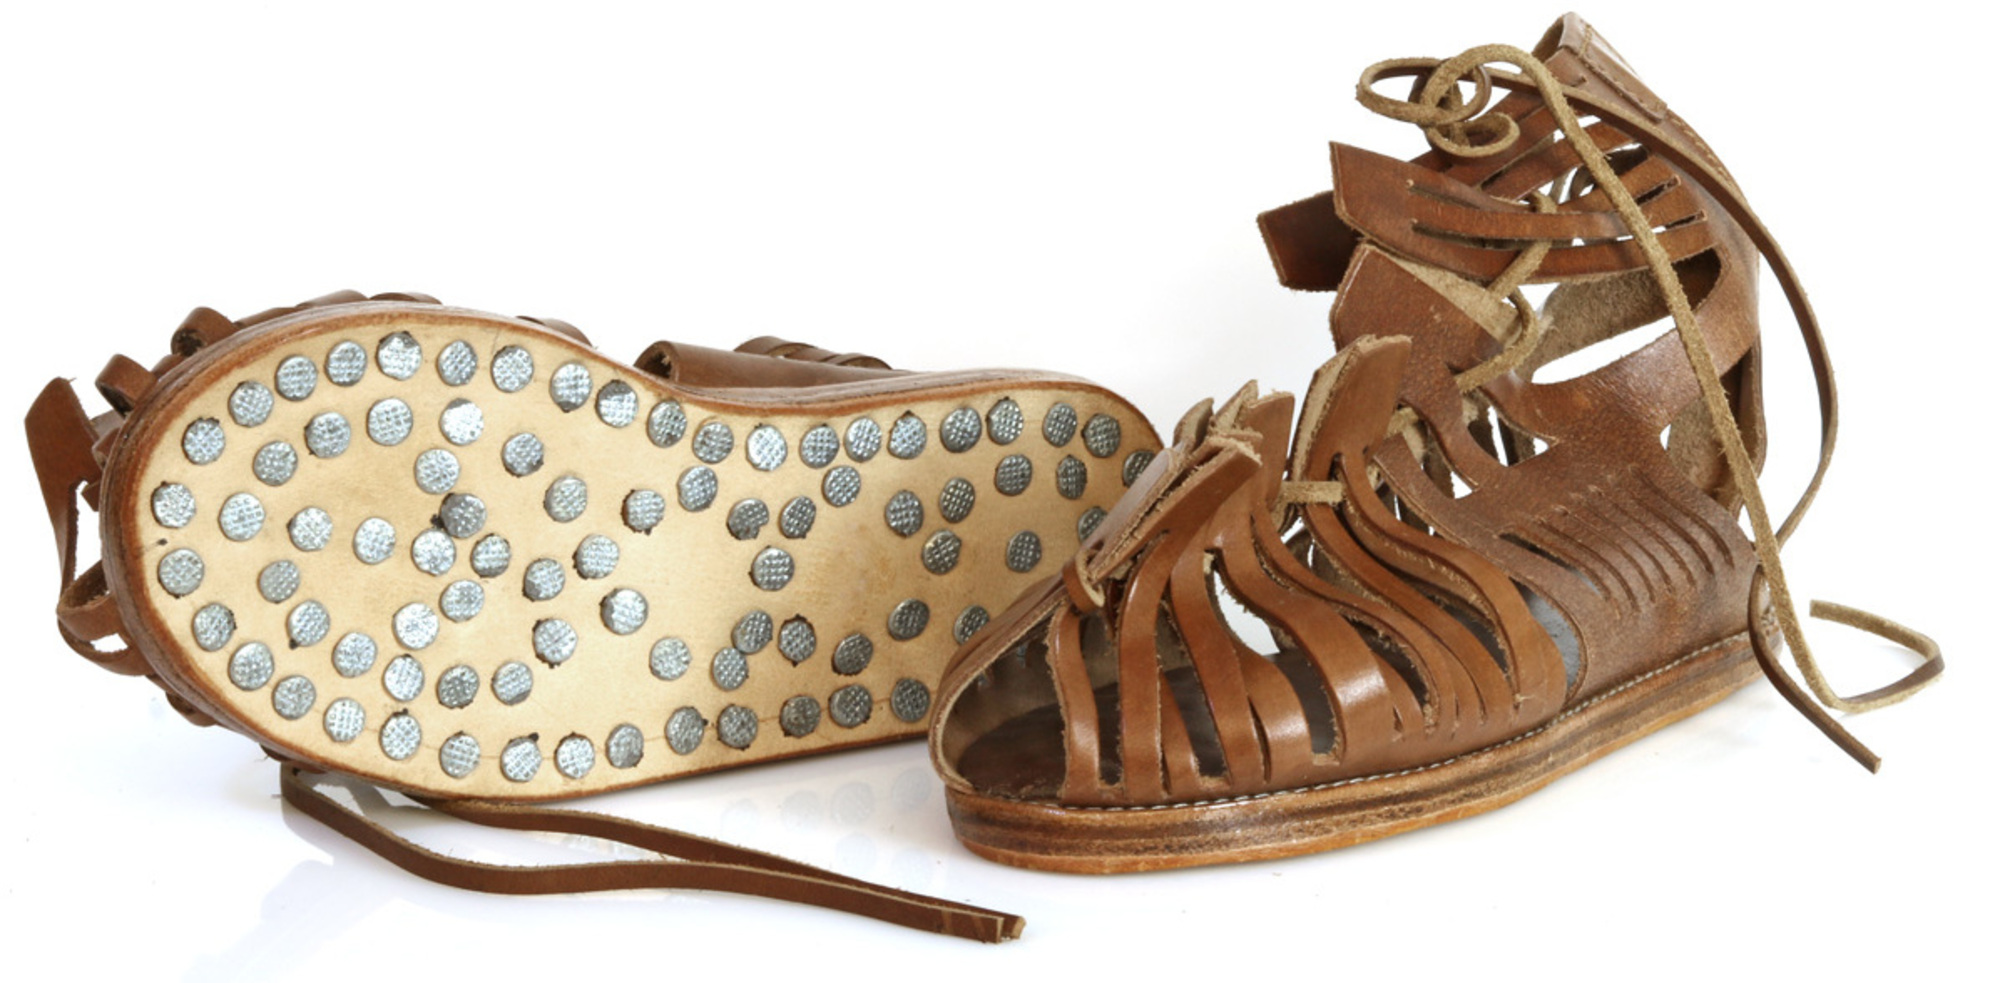 Reproduction moderne d'une sandale romaine, appelée caligae, avec une semelle de chaussure cloutée. © Marcus Regel, Mareg.net